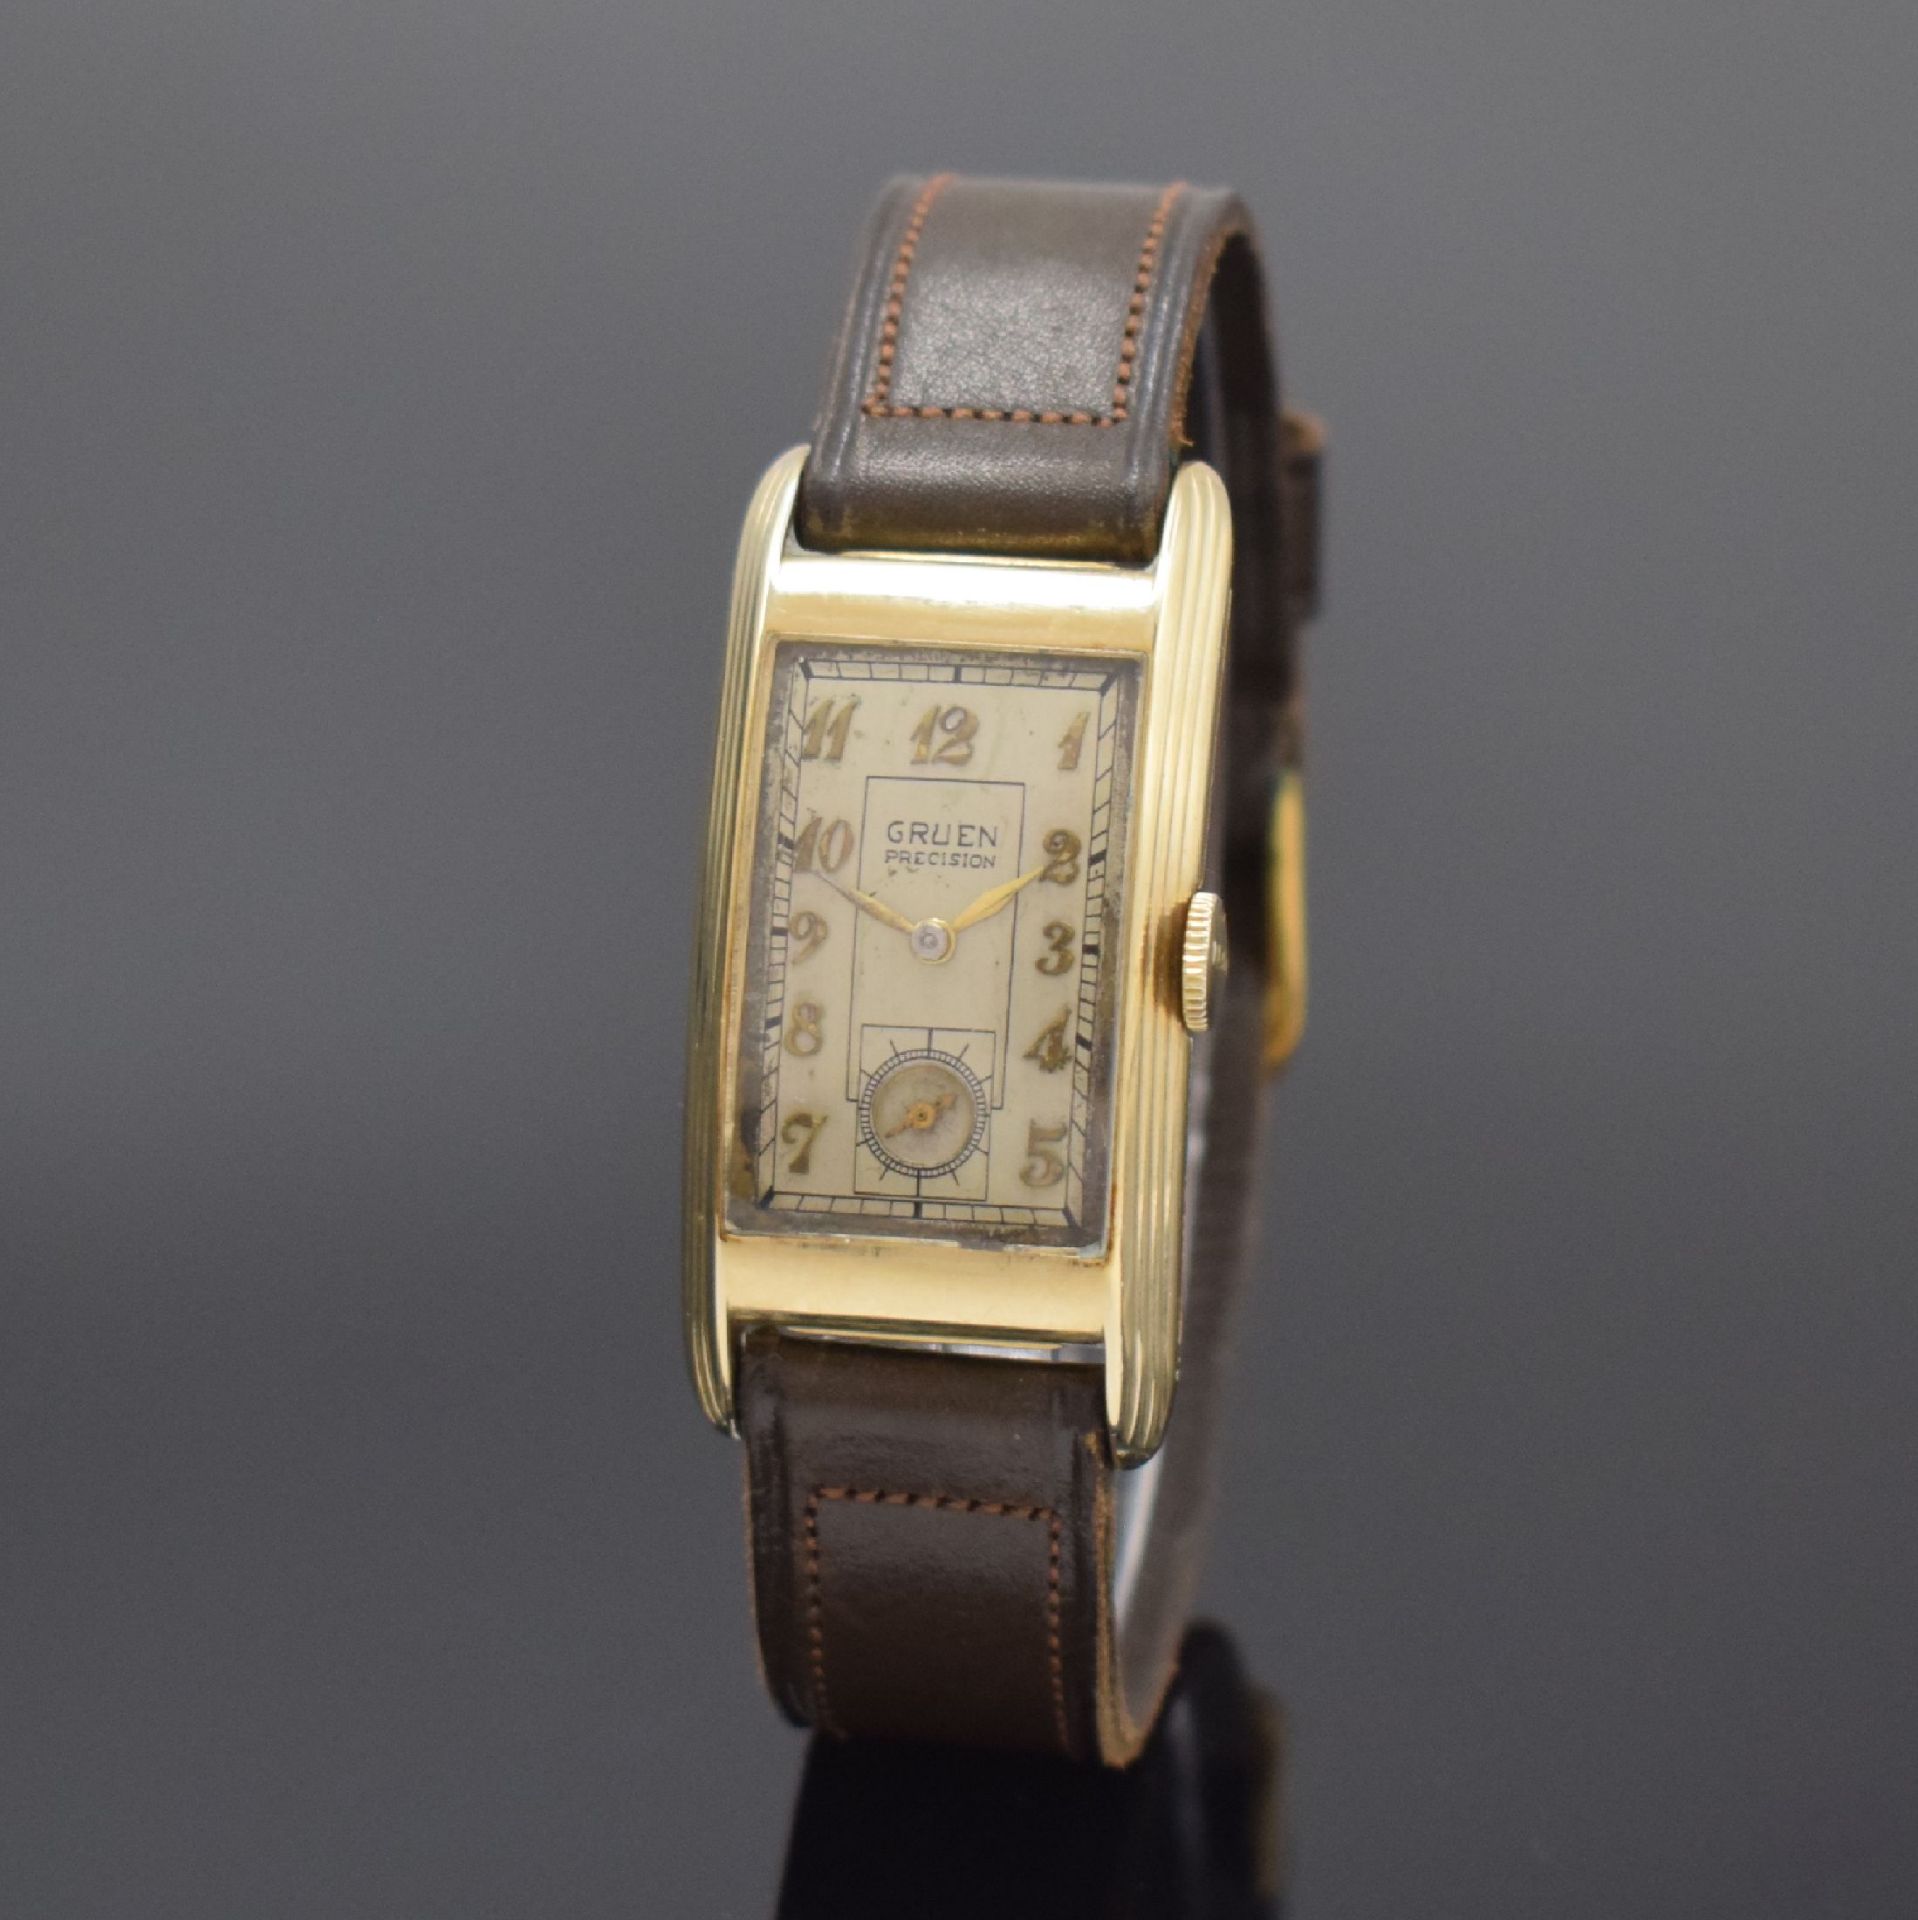 GRUEN Precision rechteckige Armbanduhr in 14k Gelbgold,